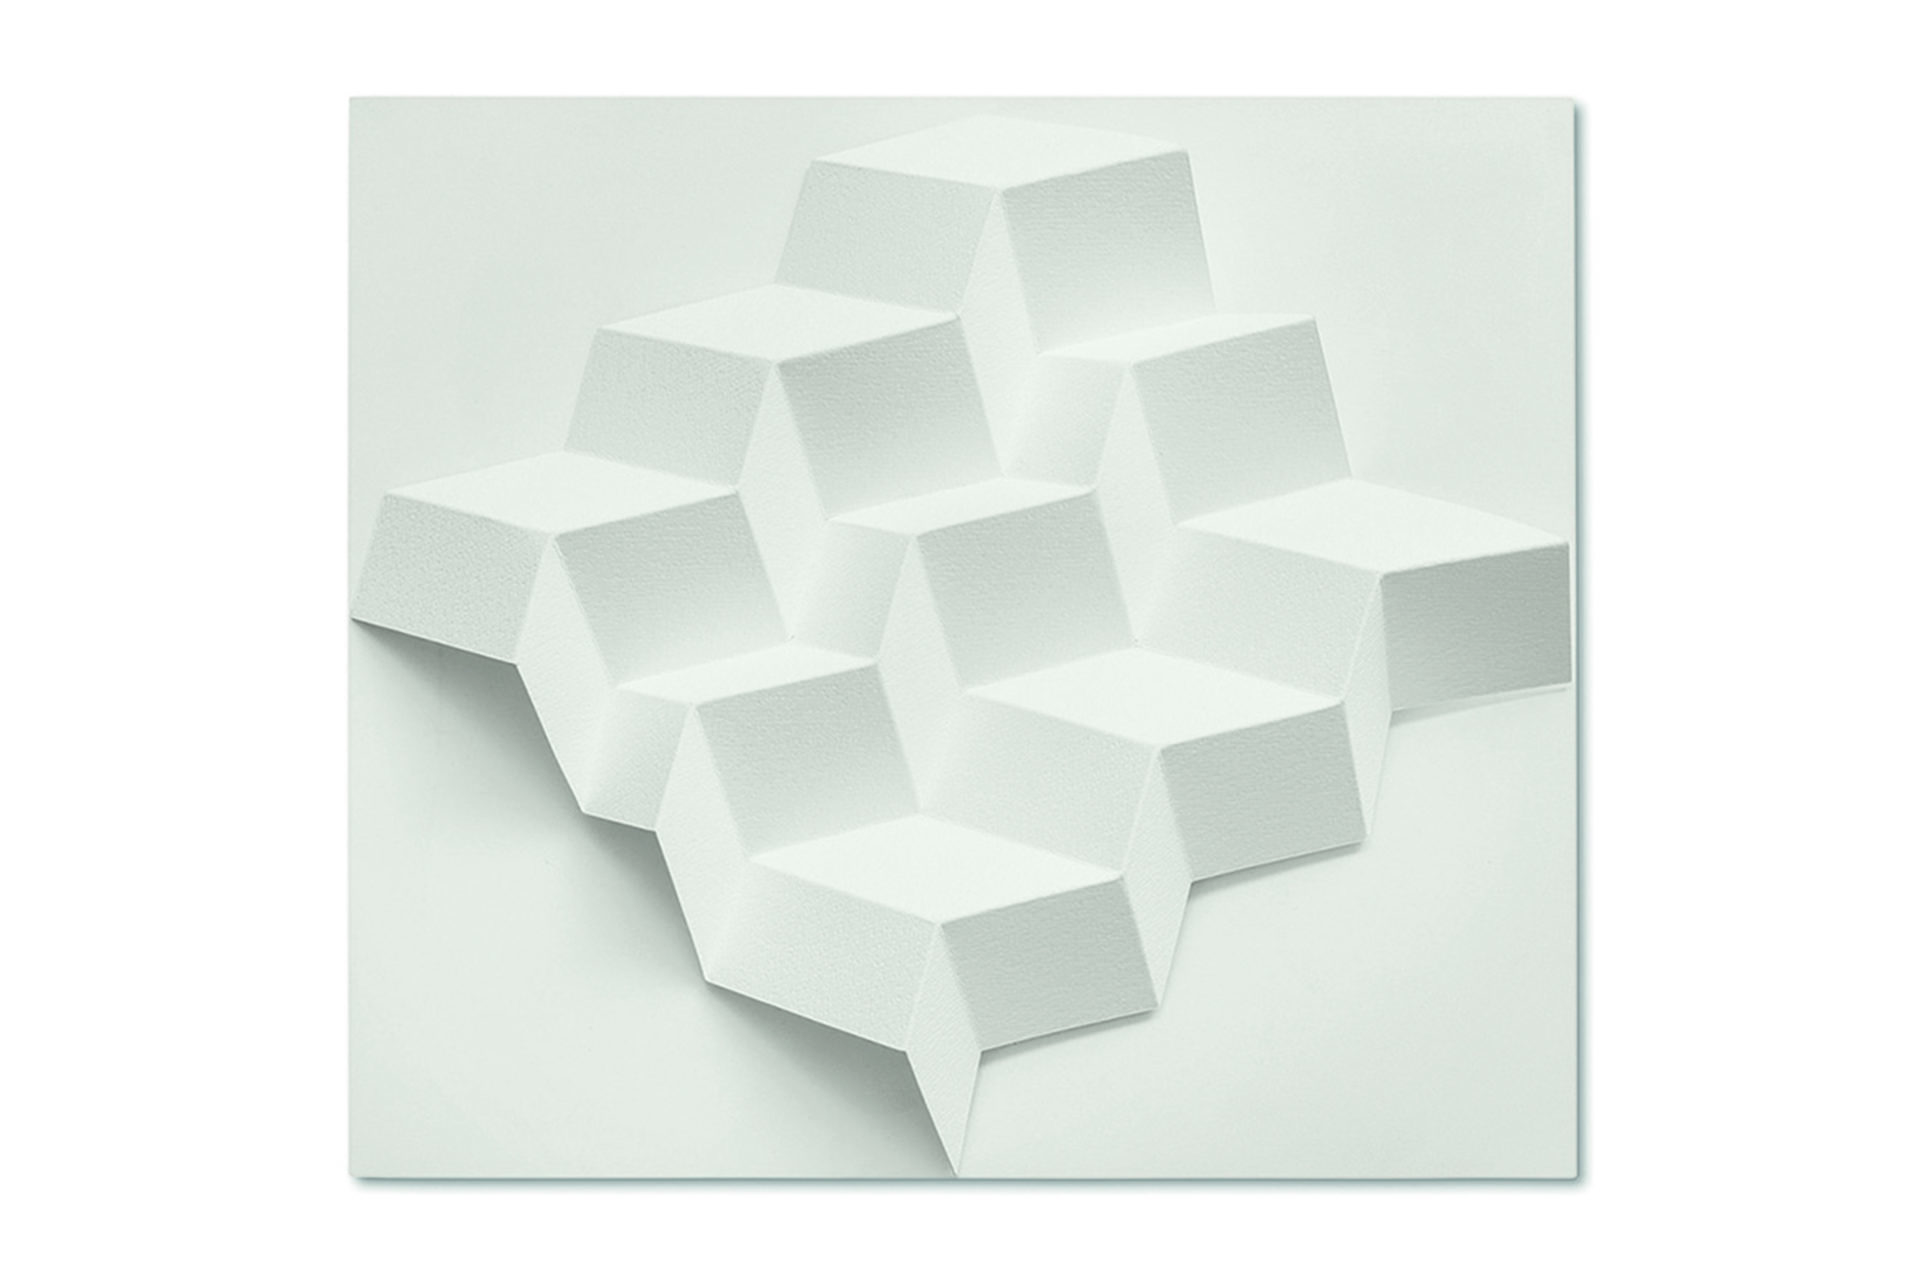 12 Quadrate und 6 Rechtecke – 2022, Fabriano Bütten 640g, gefaltet, Acrylglashaube, 55 x 62 x 10 cm